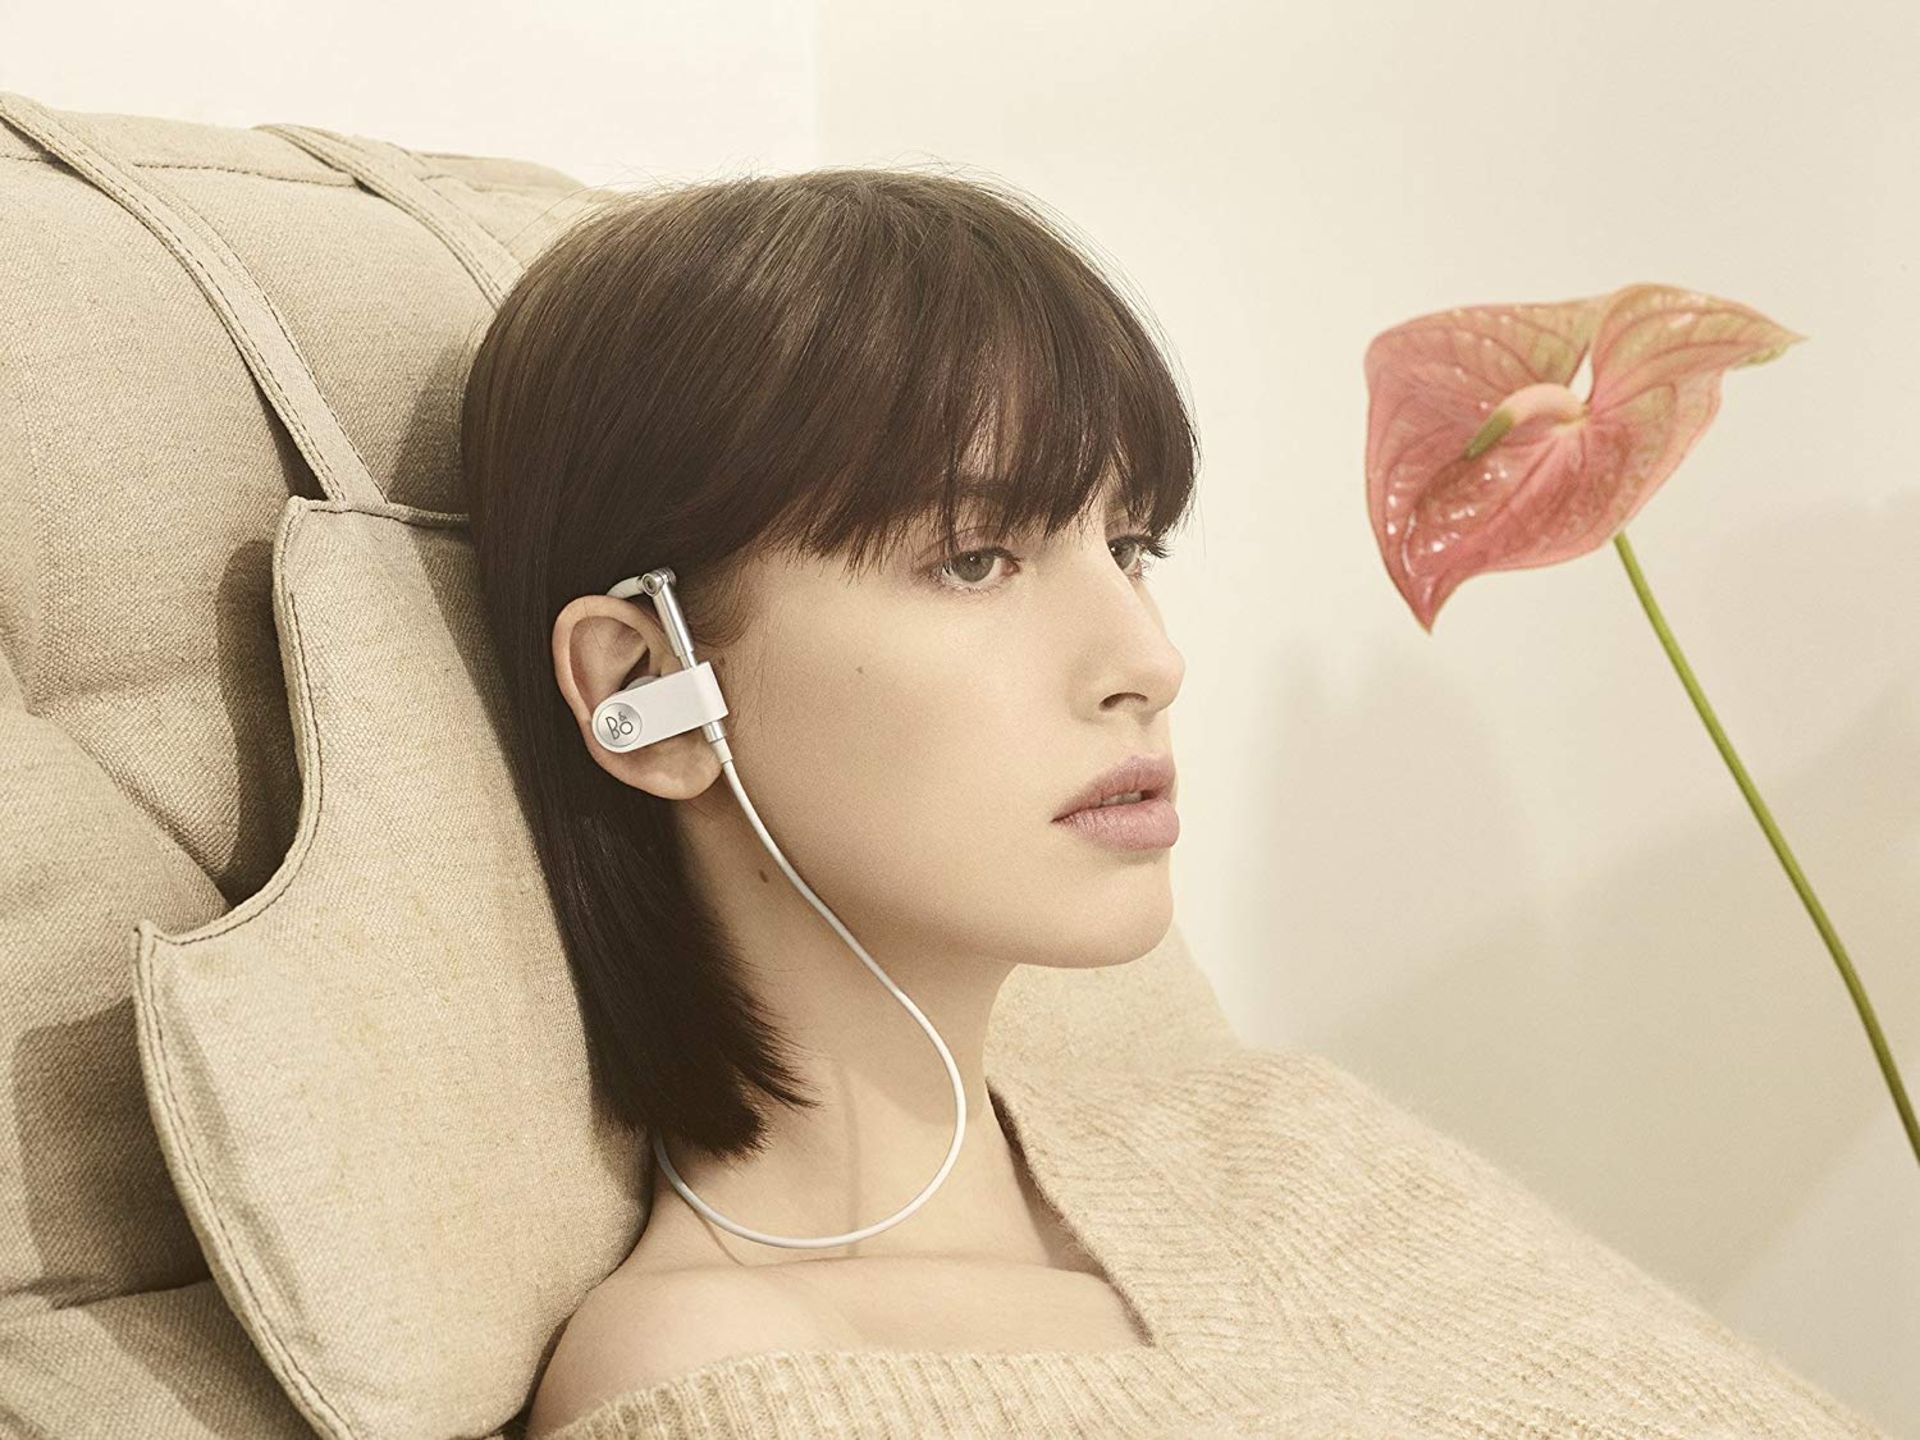 V Brand New Bang & Olufsen Premium Wireless Earset Earphones - White RRP £275.00 - Brand New - Image 2 of 3